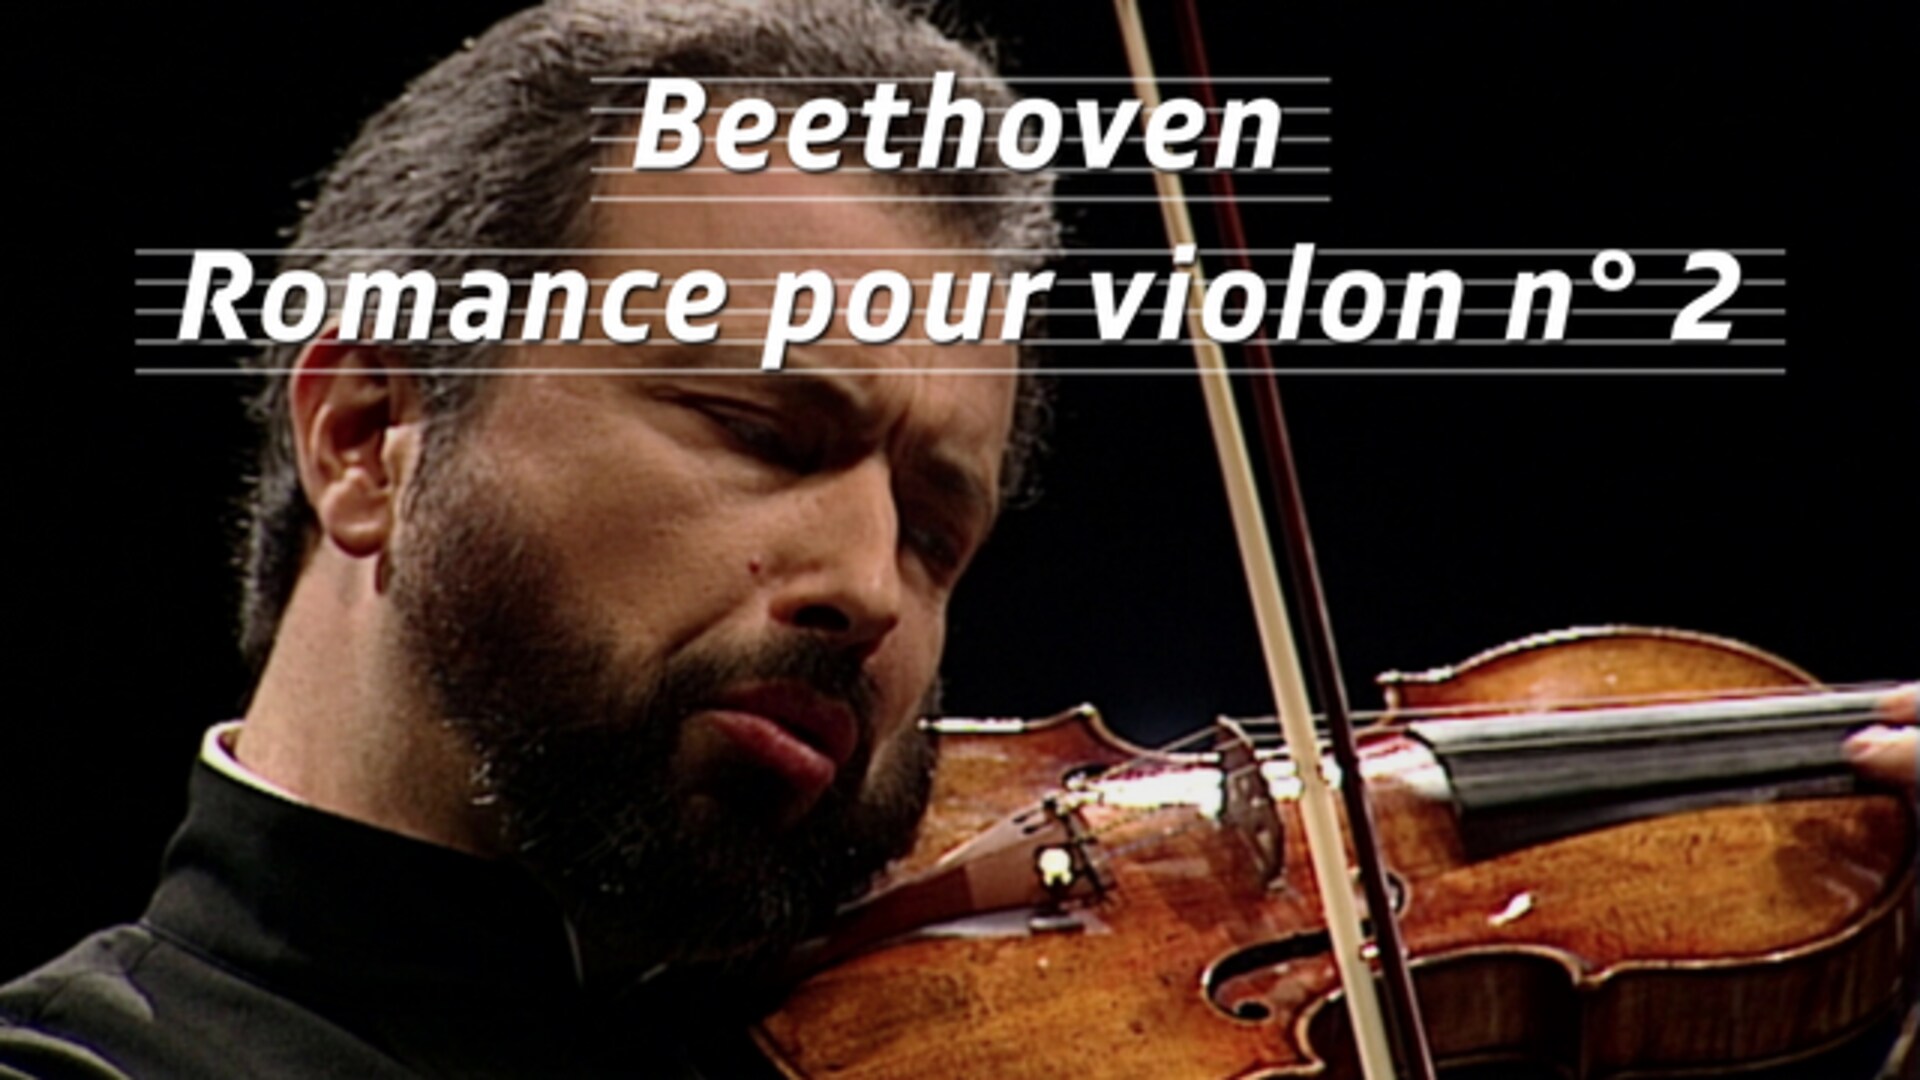 Beethoven - Romance pour violon n° 2